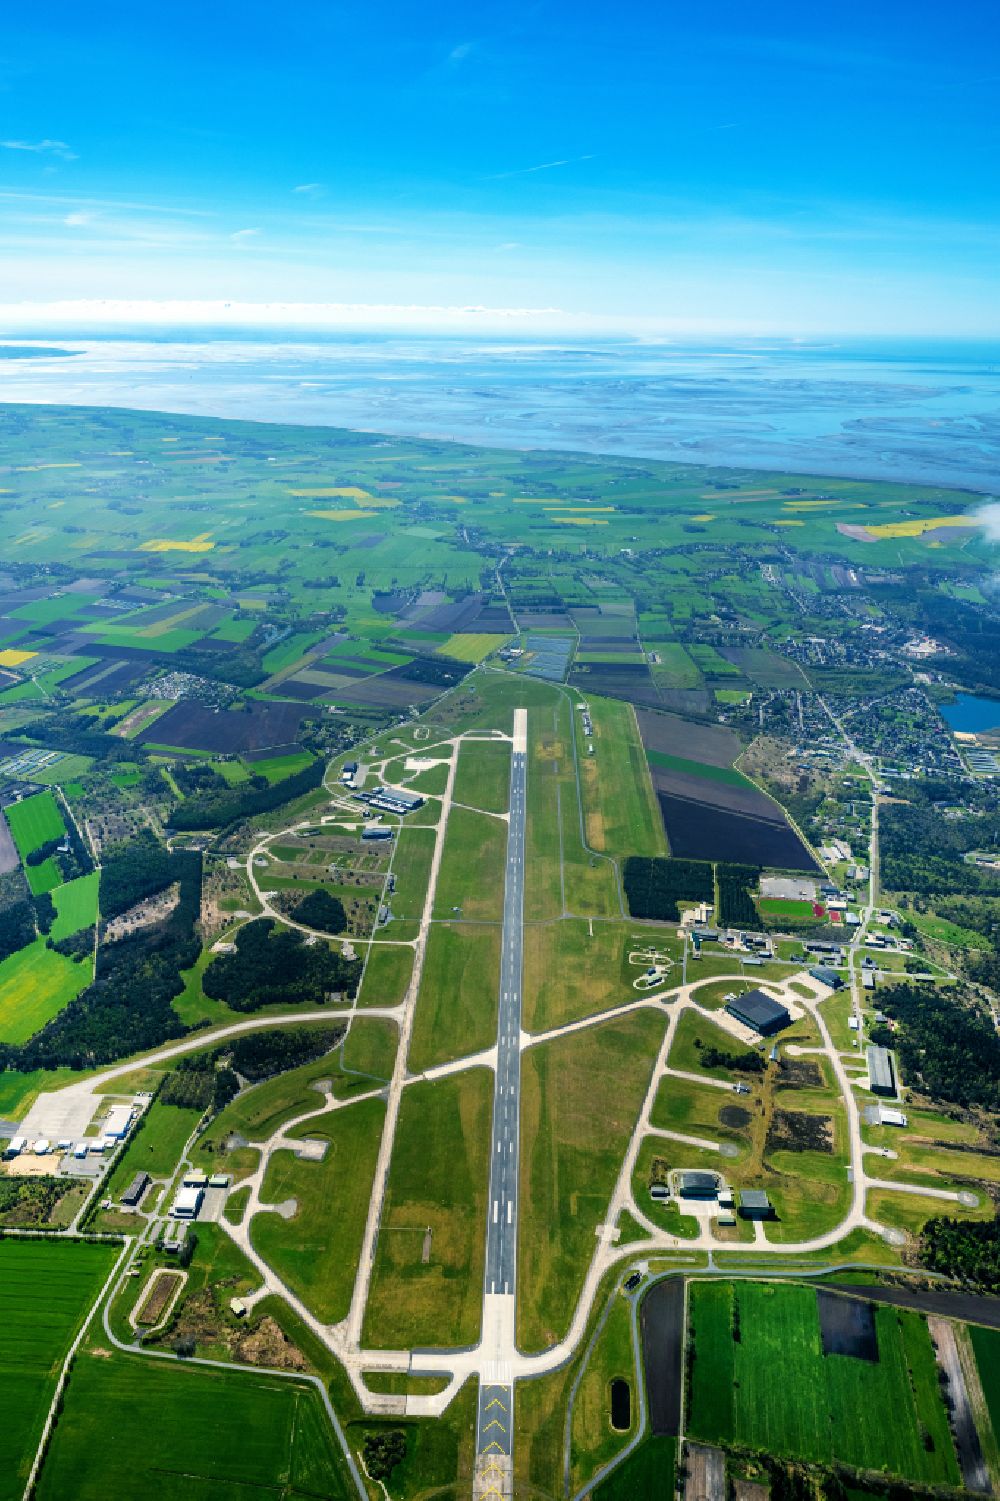 Luftbild Nordholz - Gelände des Flughafen Nordholz/Cuxhaven in Nordholz im Bundesland Niedersachsen, Deutschland